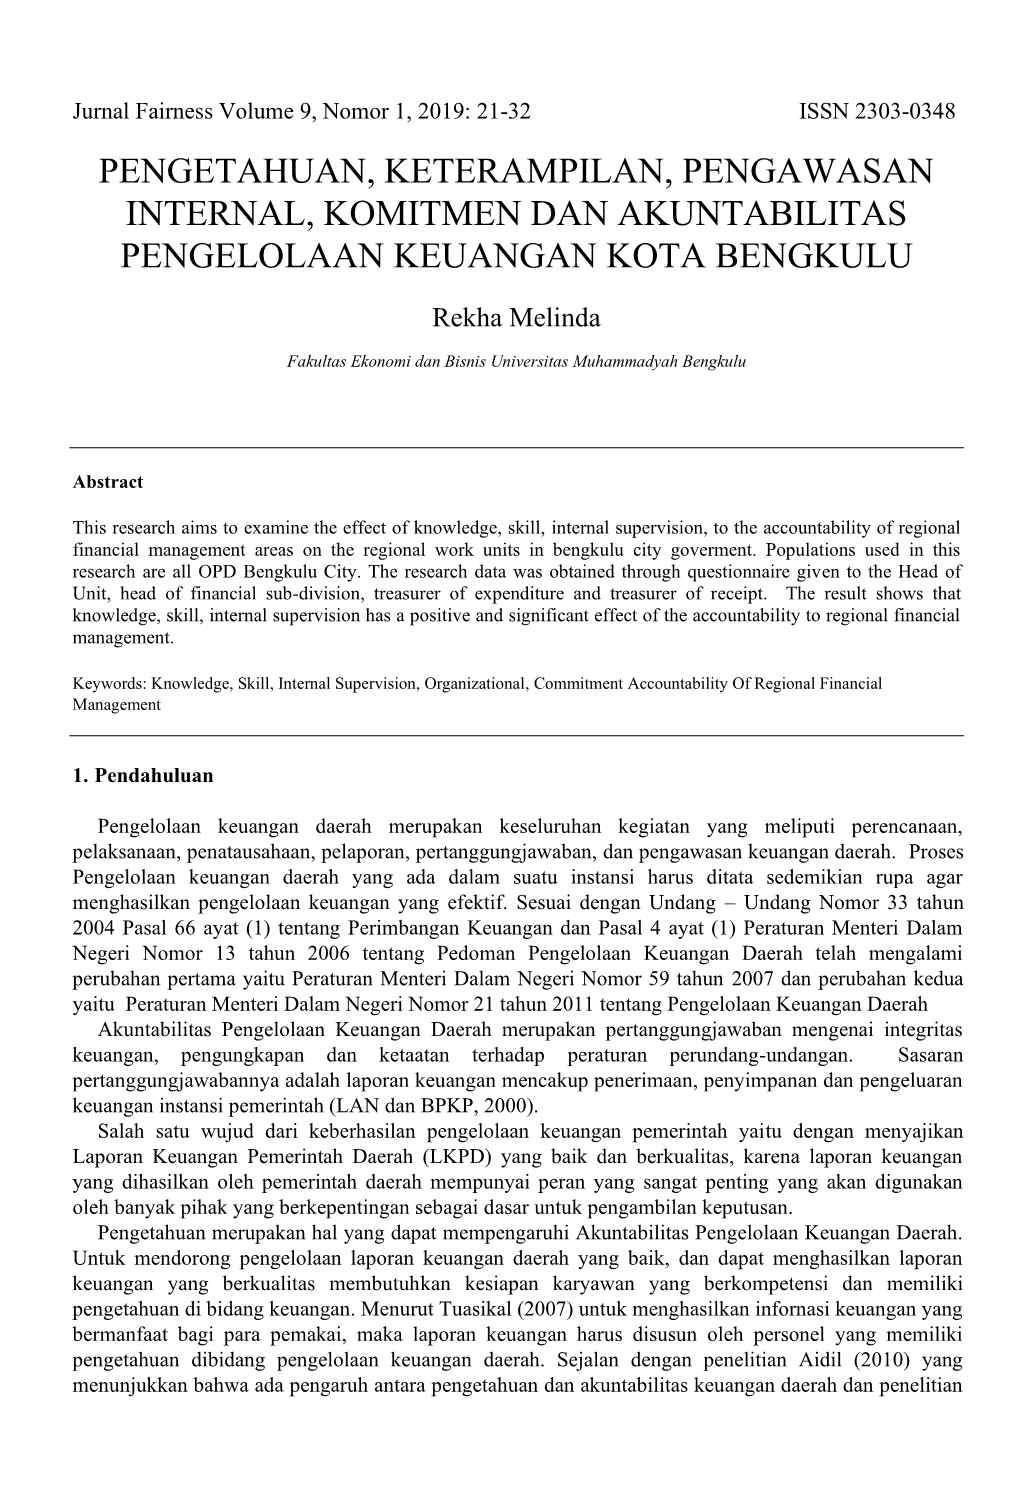 Pengetahuan, Keterampilan, Pengawasan Internal, Komitmen Dan Akuntabilitas Pengelolaan Keuangan Kota Bengkulu